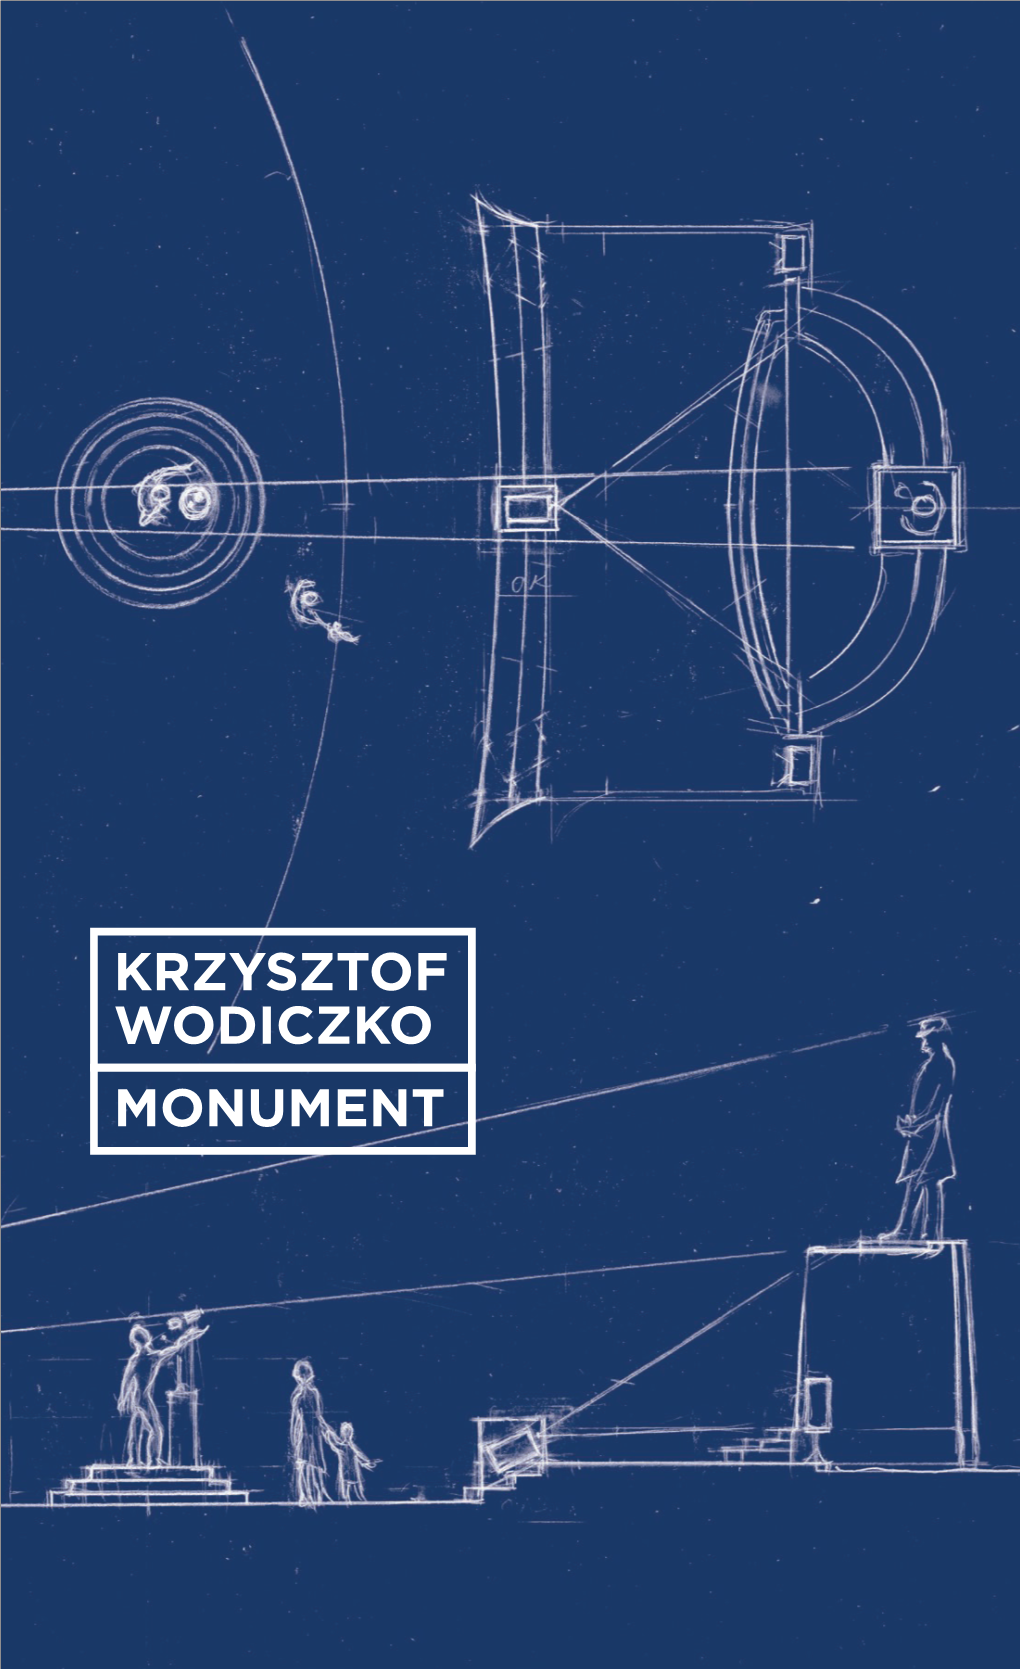 Krzysztof Wodiczko Monument